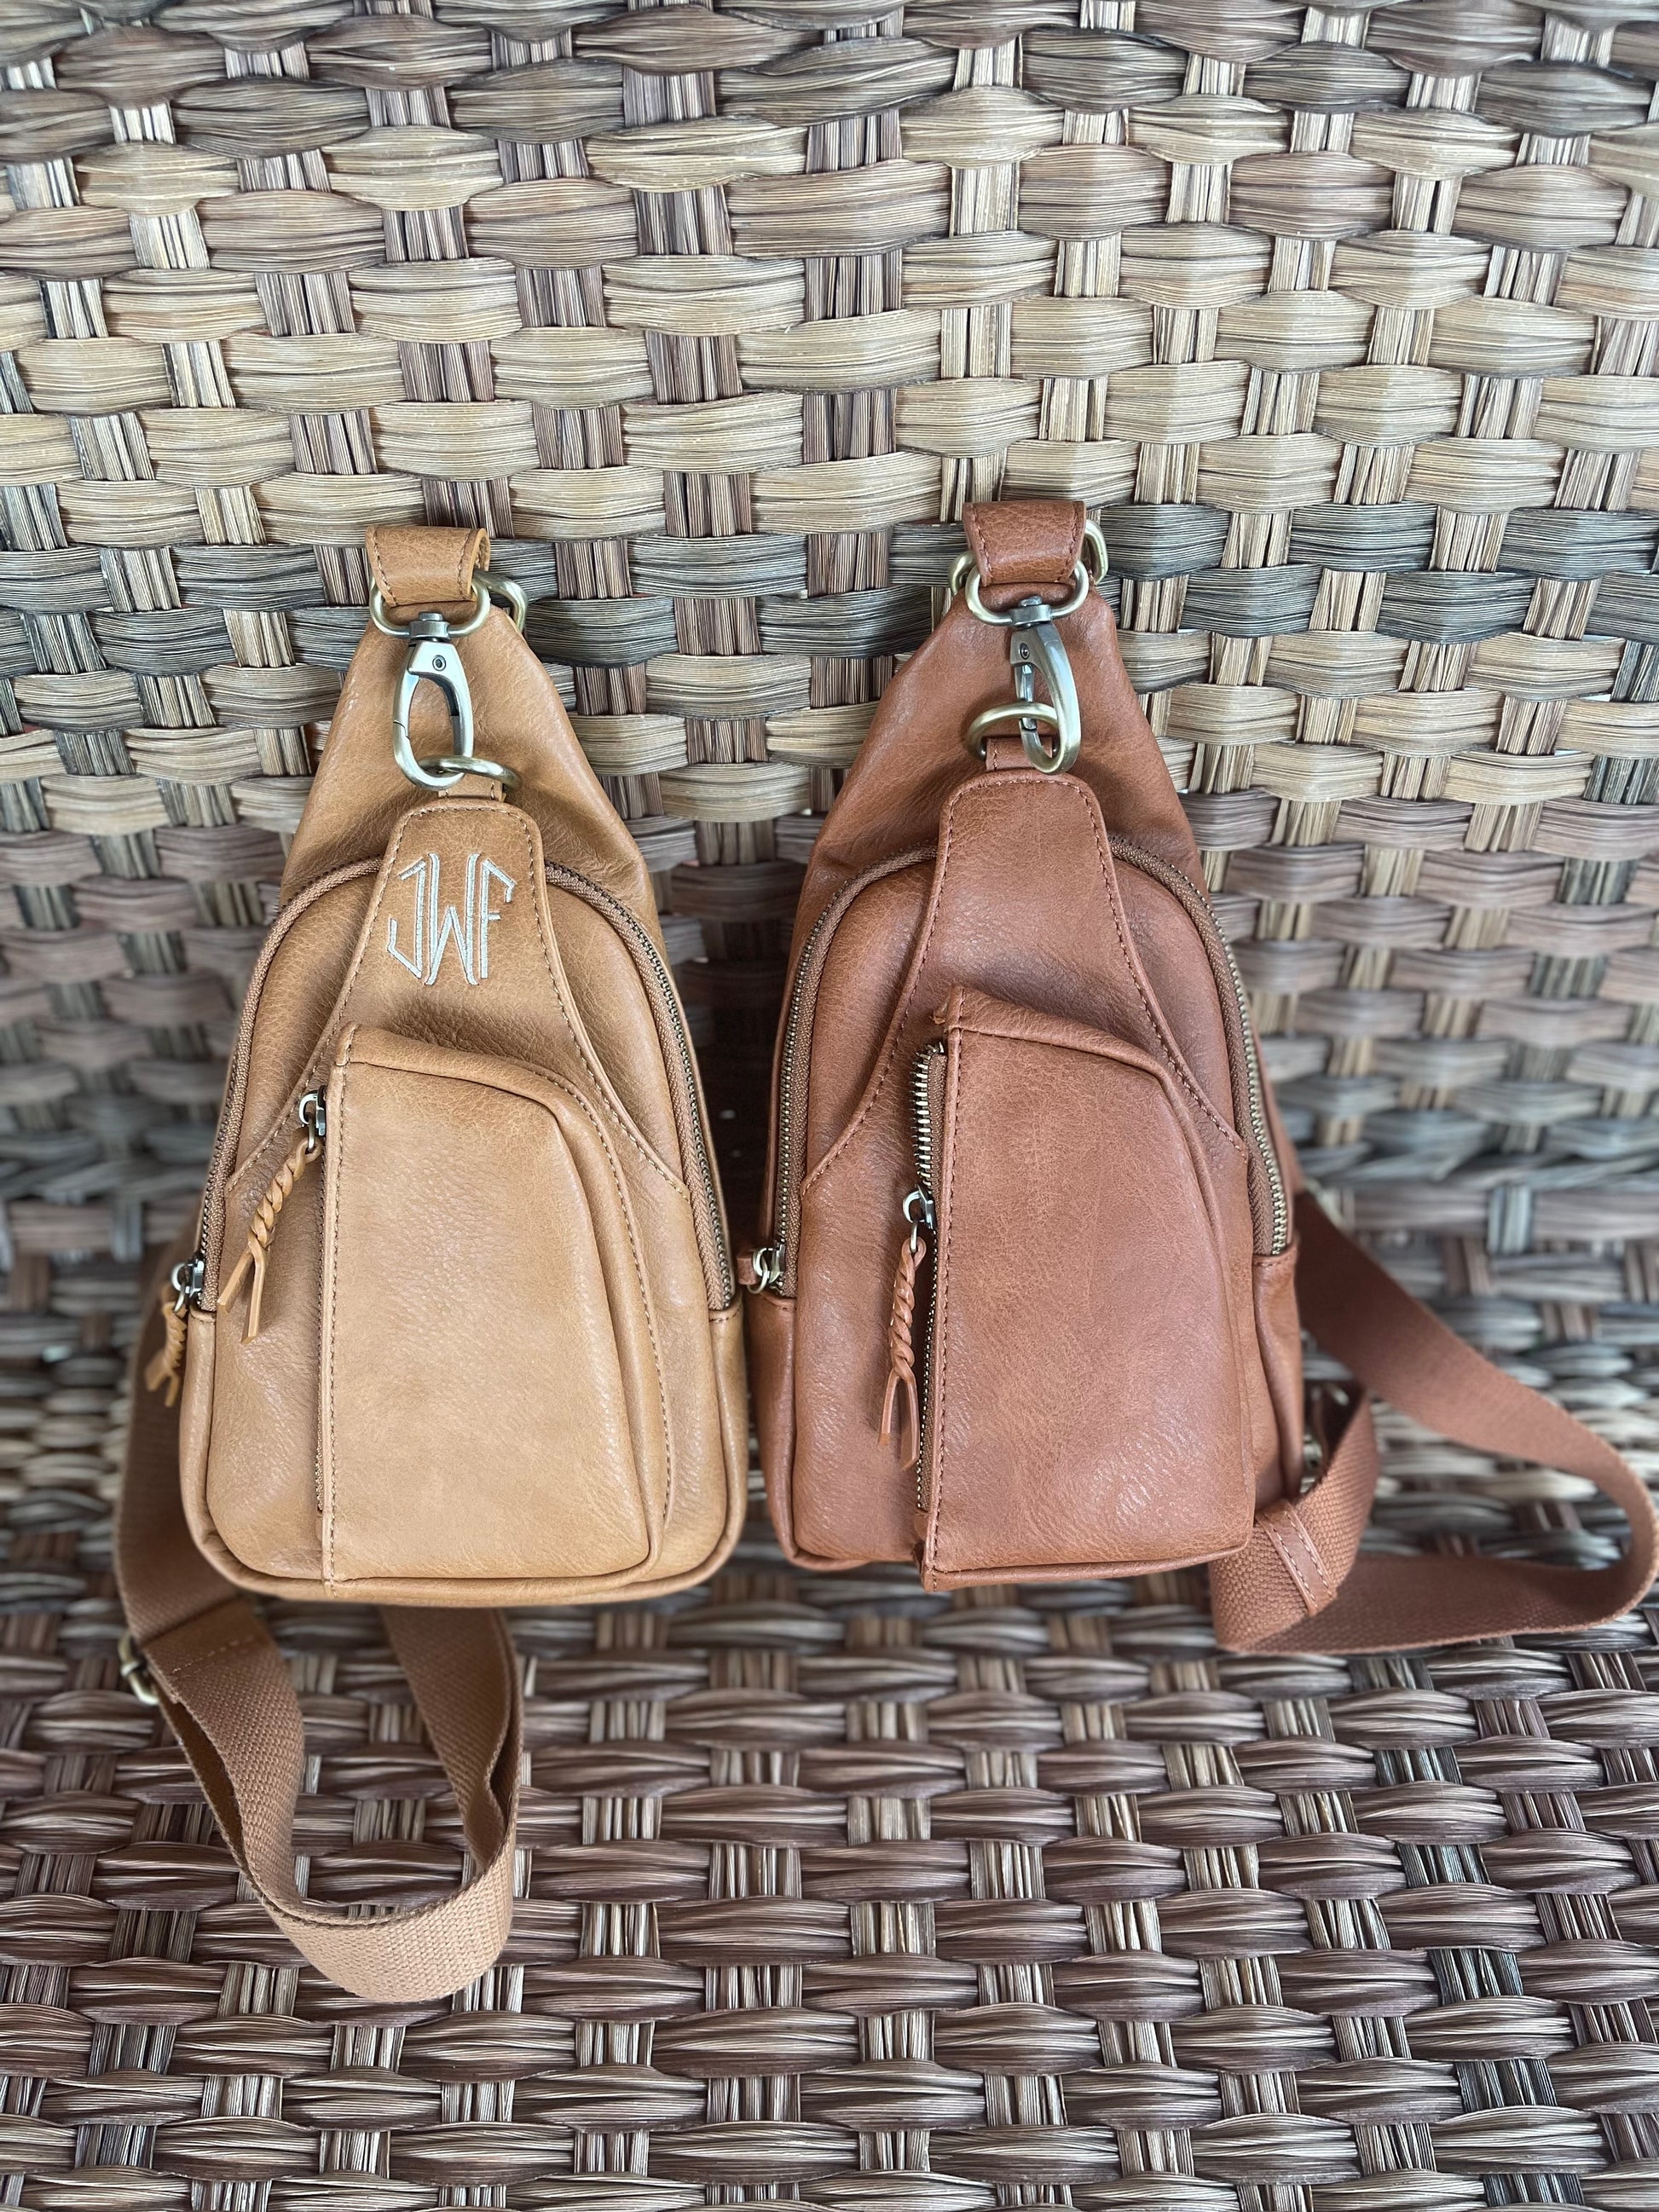 Monogrammed Vegan Leather Wristlet Handbag Camel